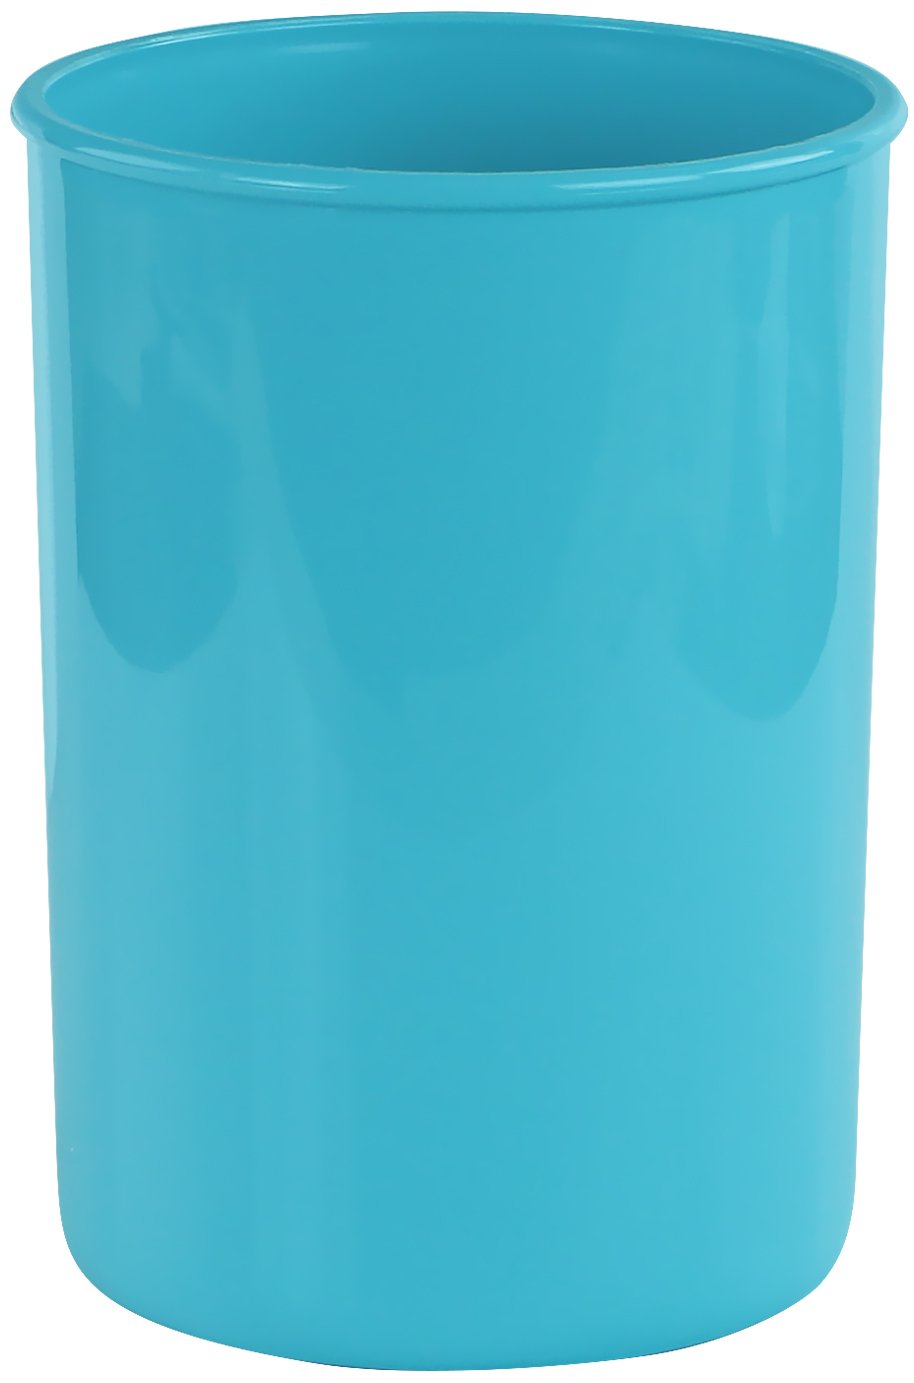 Reston Lloyd 00702 Calypso Basics Plastic Utensil Holder - Turquoise